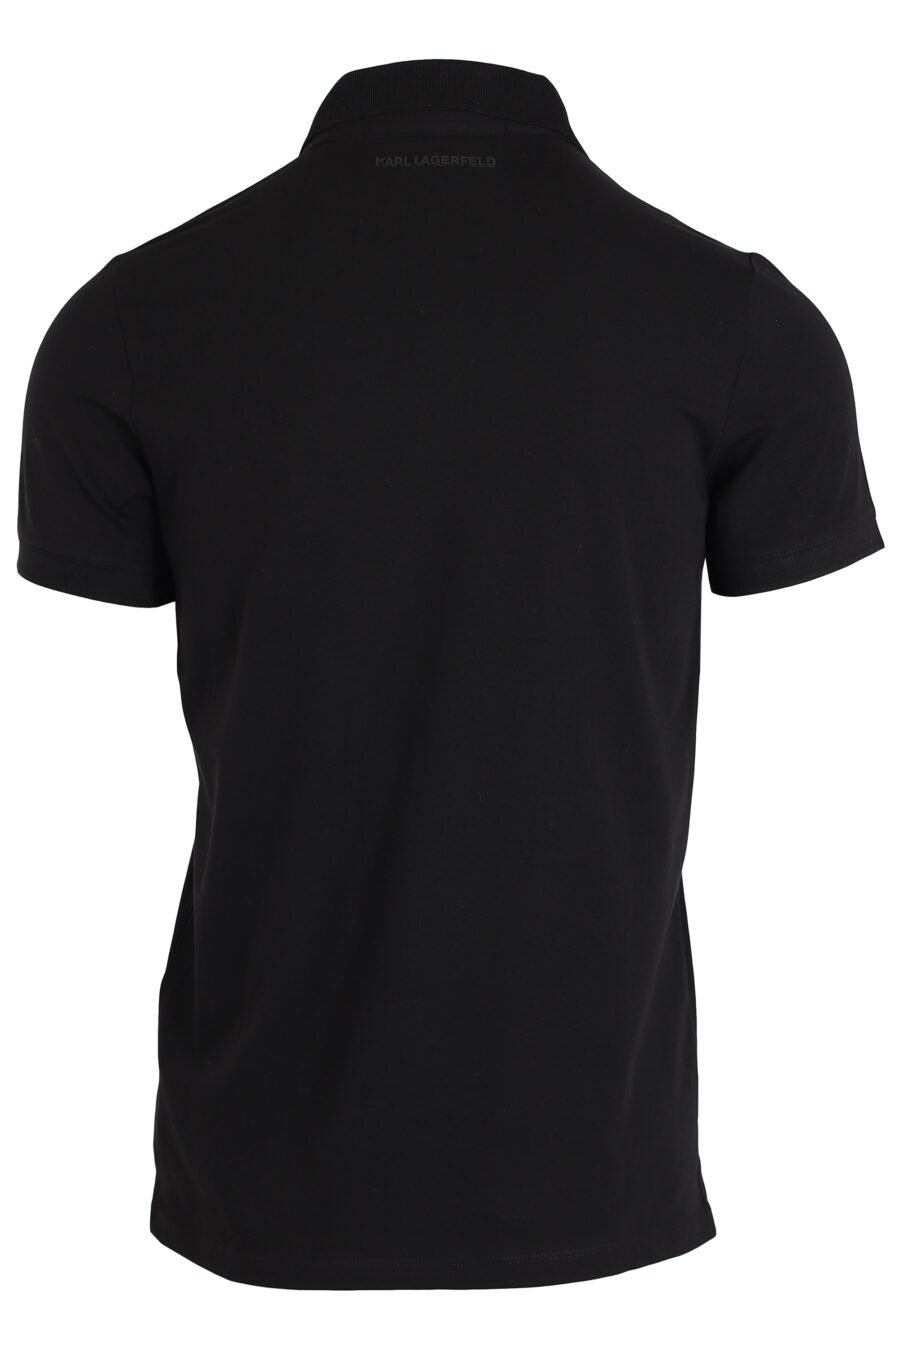 Black polo shirt with small "ikonik" logo - IMG 3984